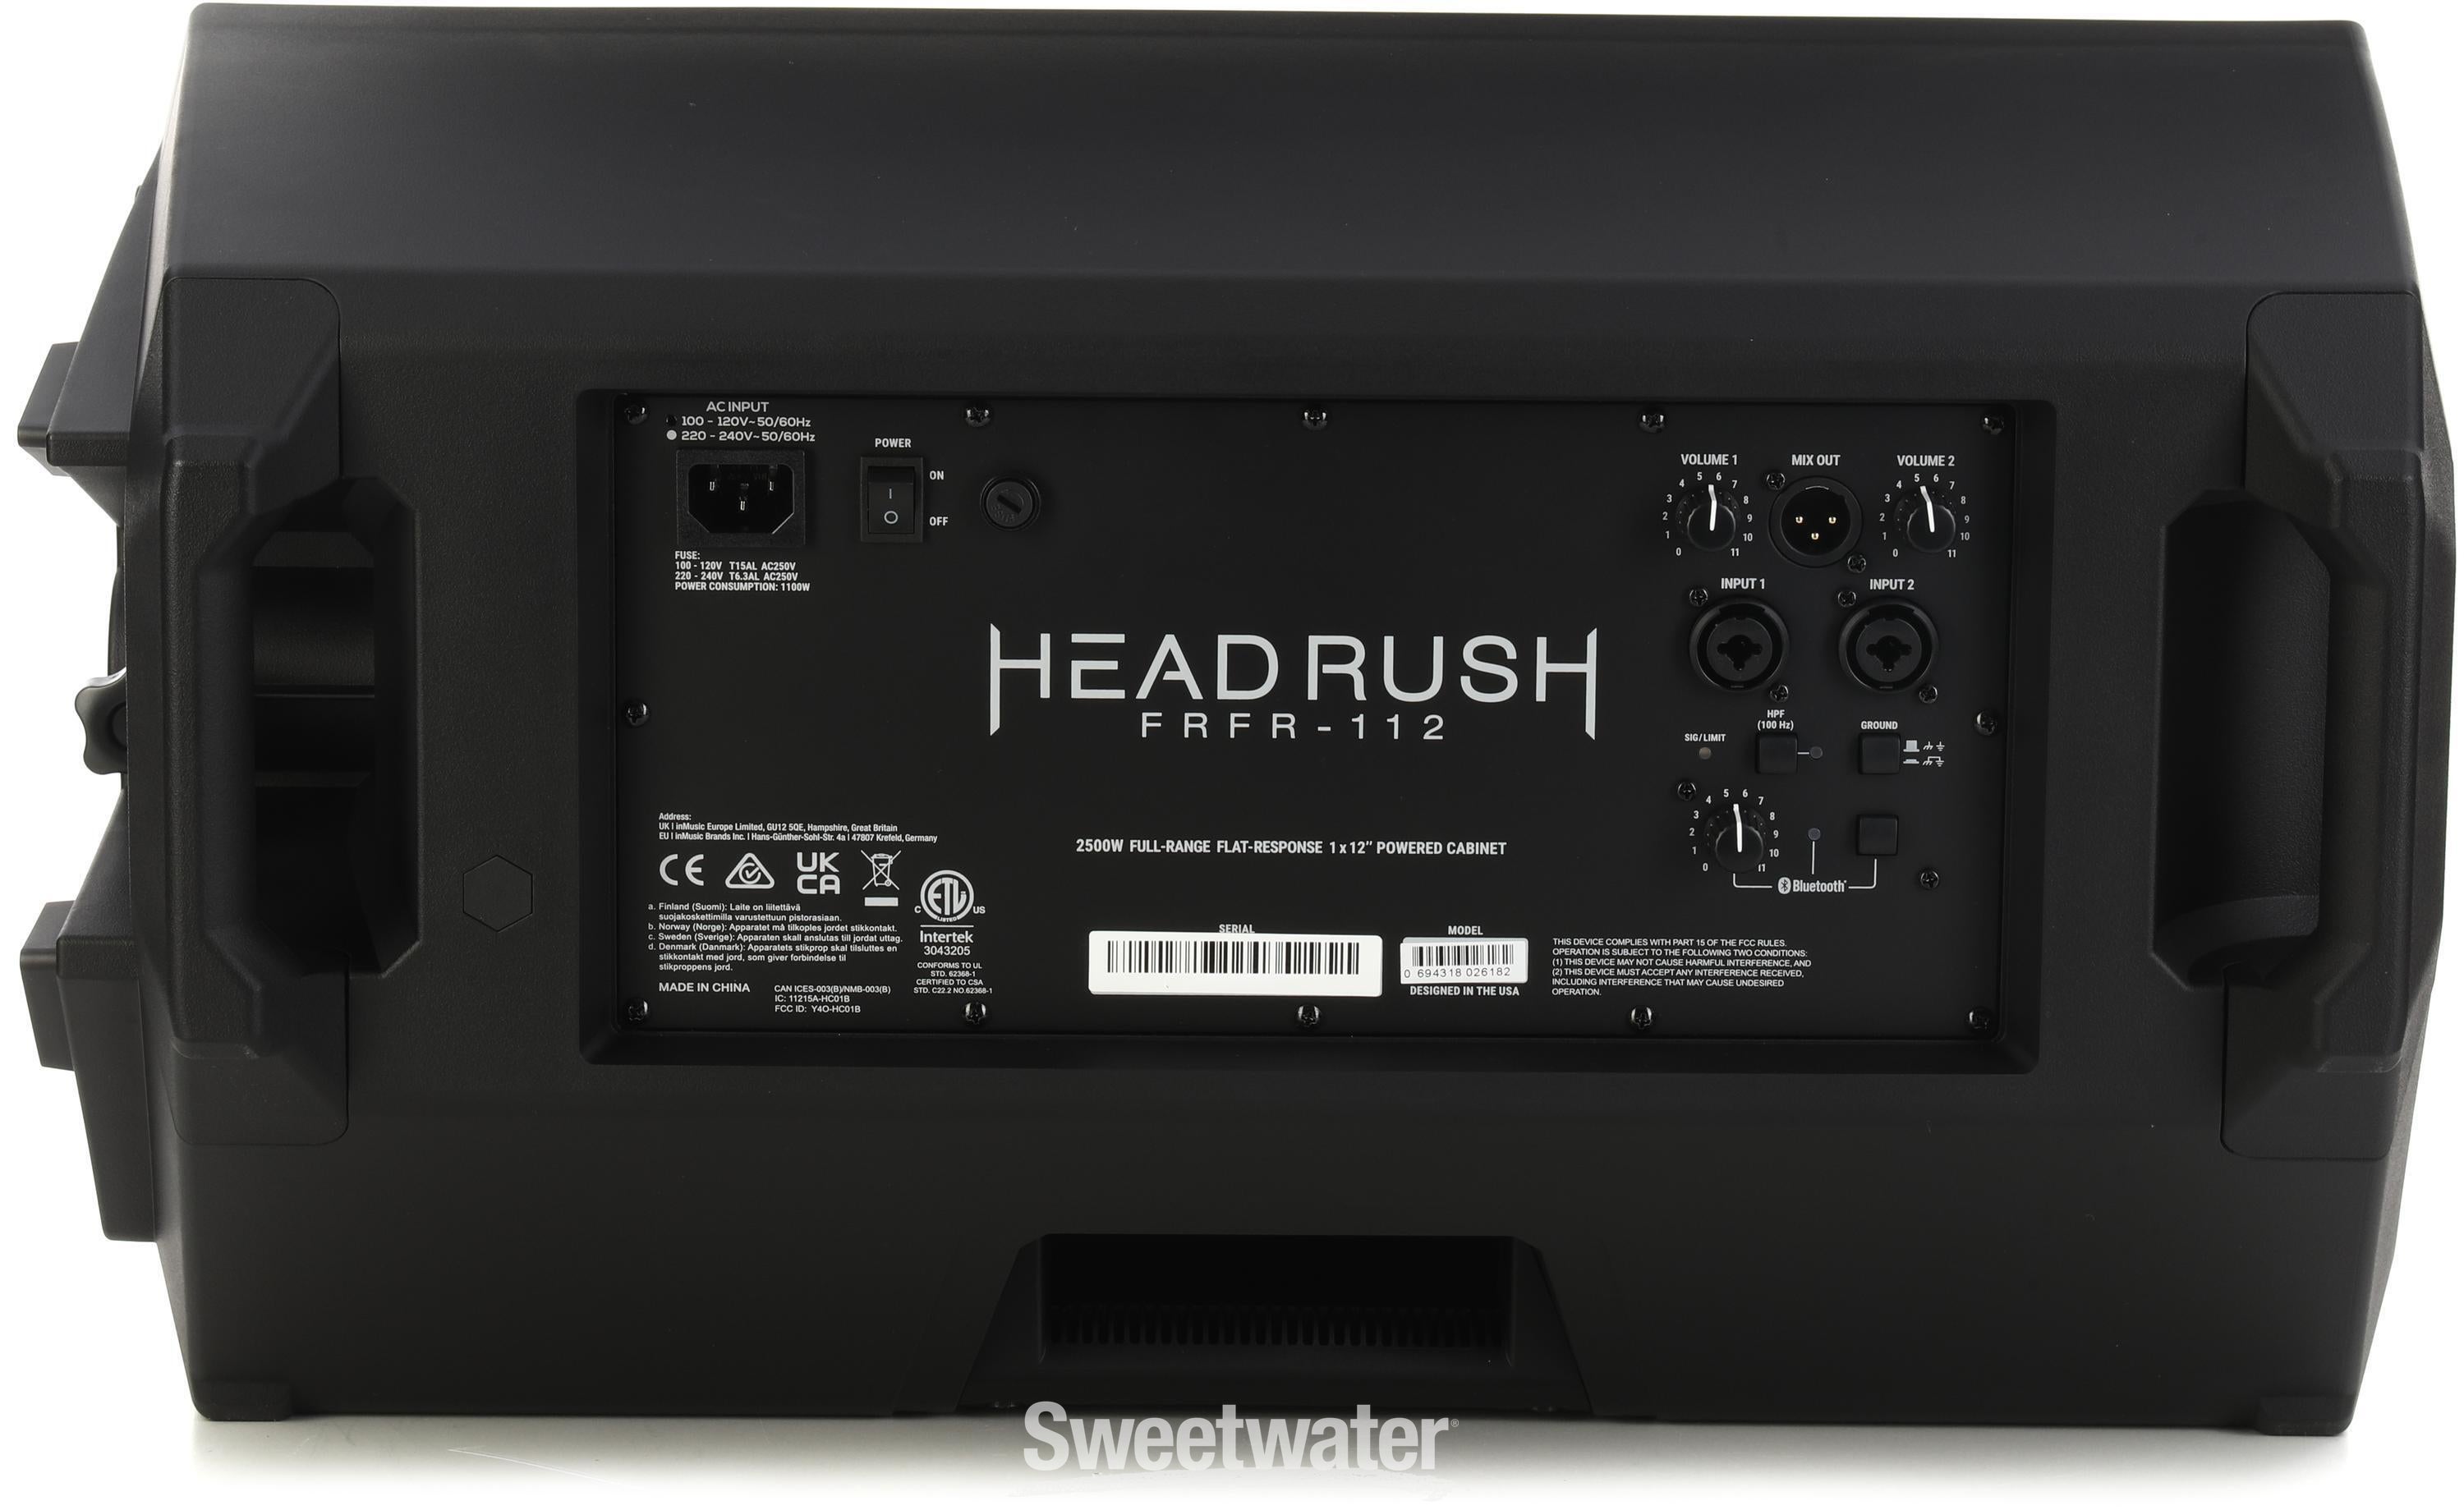 Headrush FRFR-112 MKII 2,500-watt 1 x 12-inch Powered Guitar Cabinet